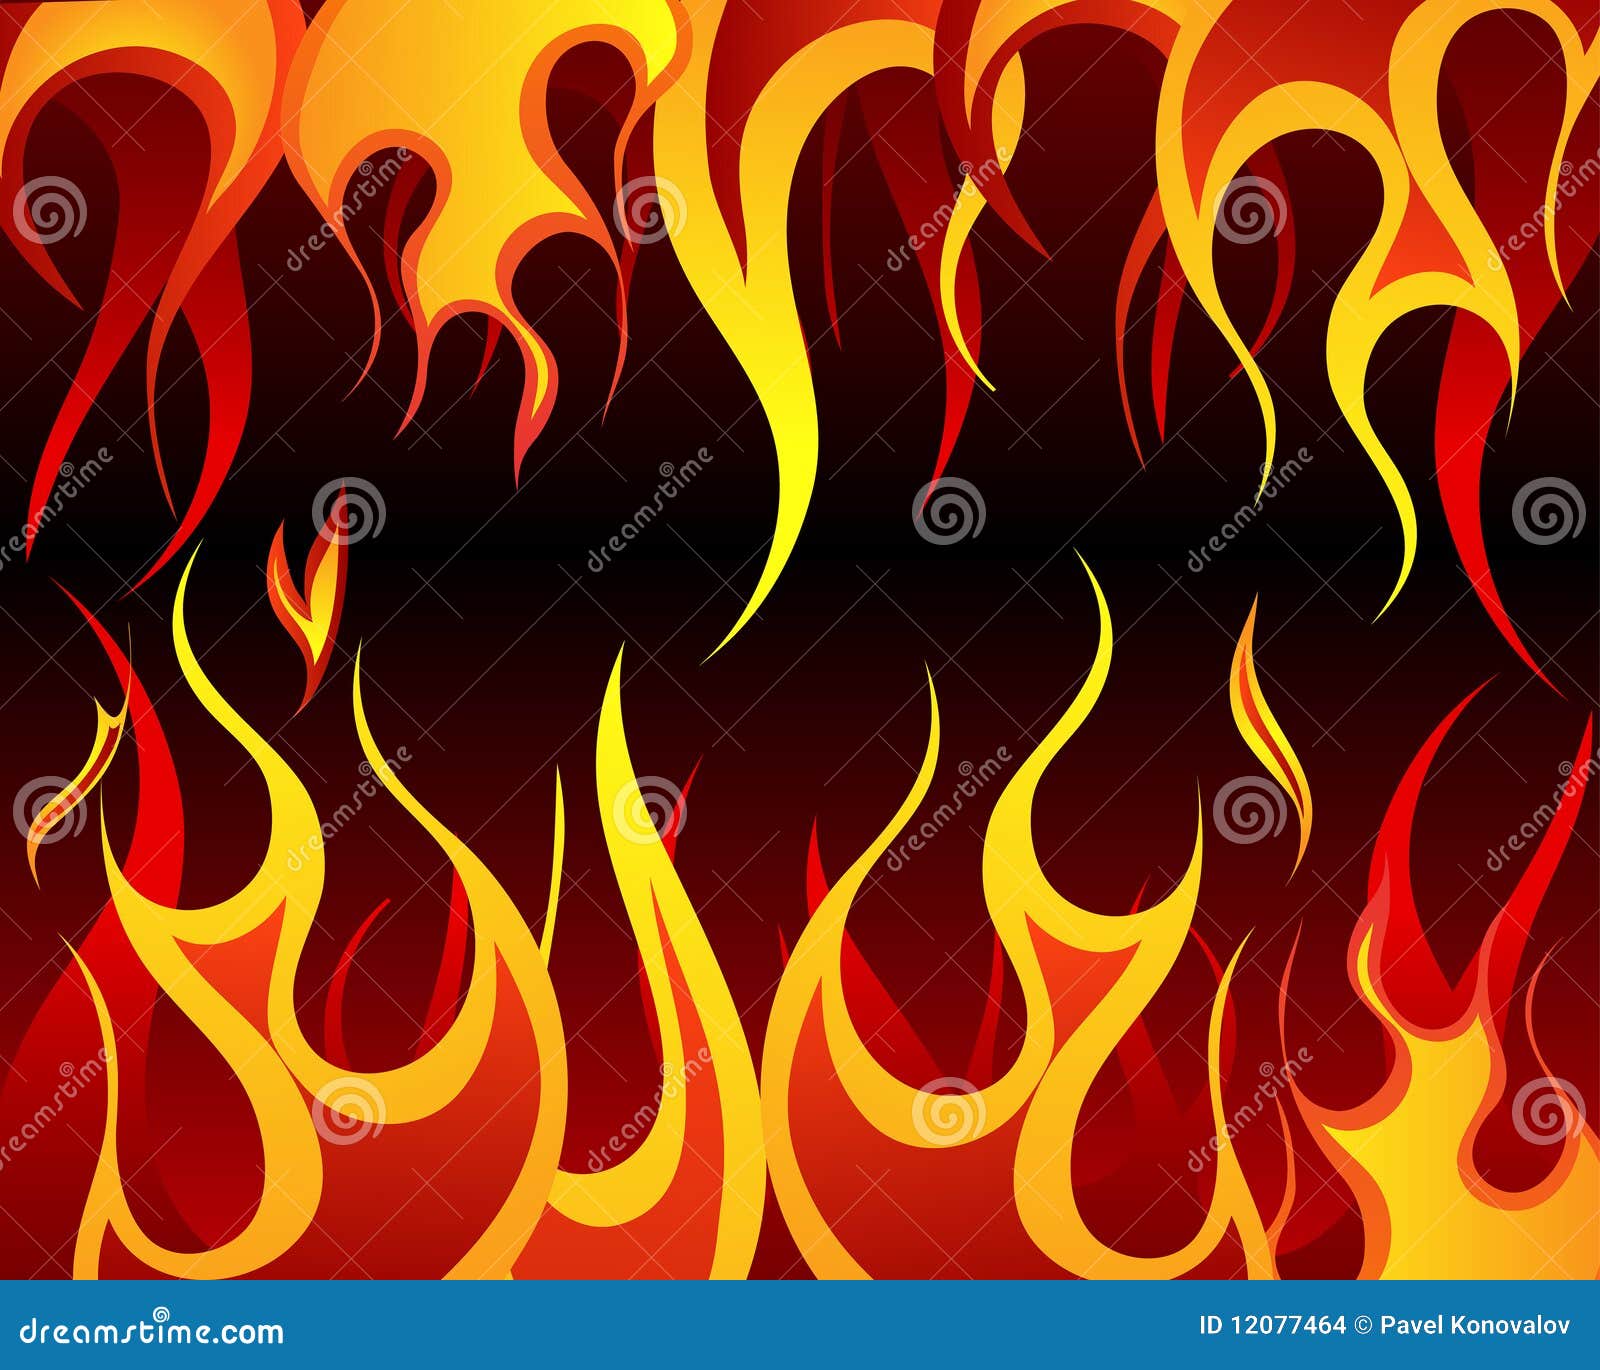 Download 520 Koleksi Background Foto Api HD Terbaik